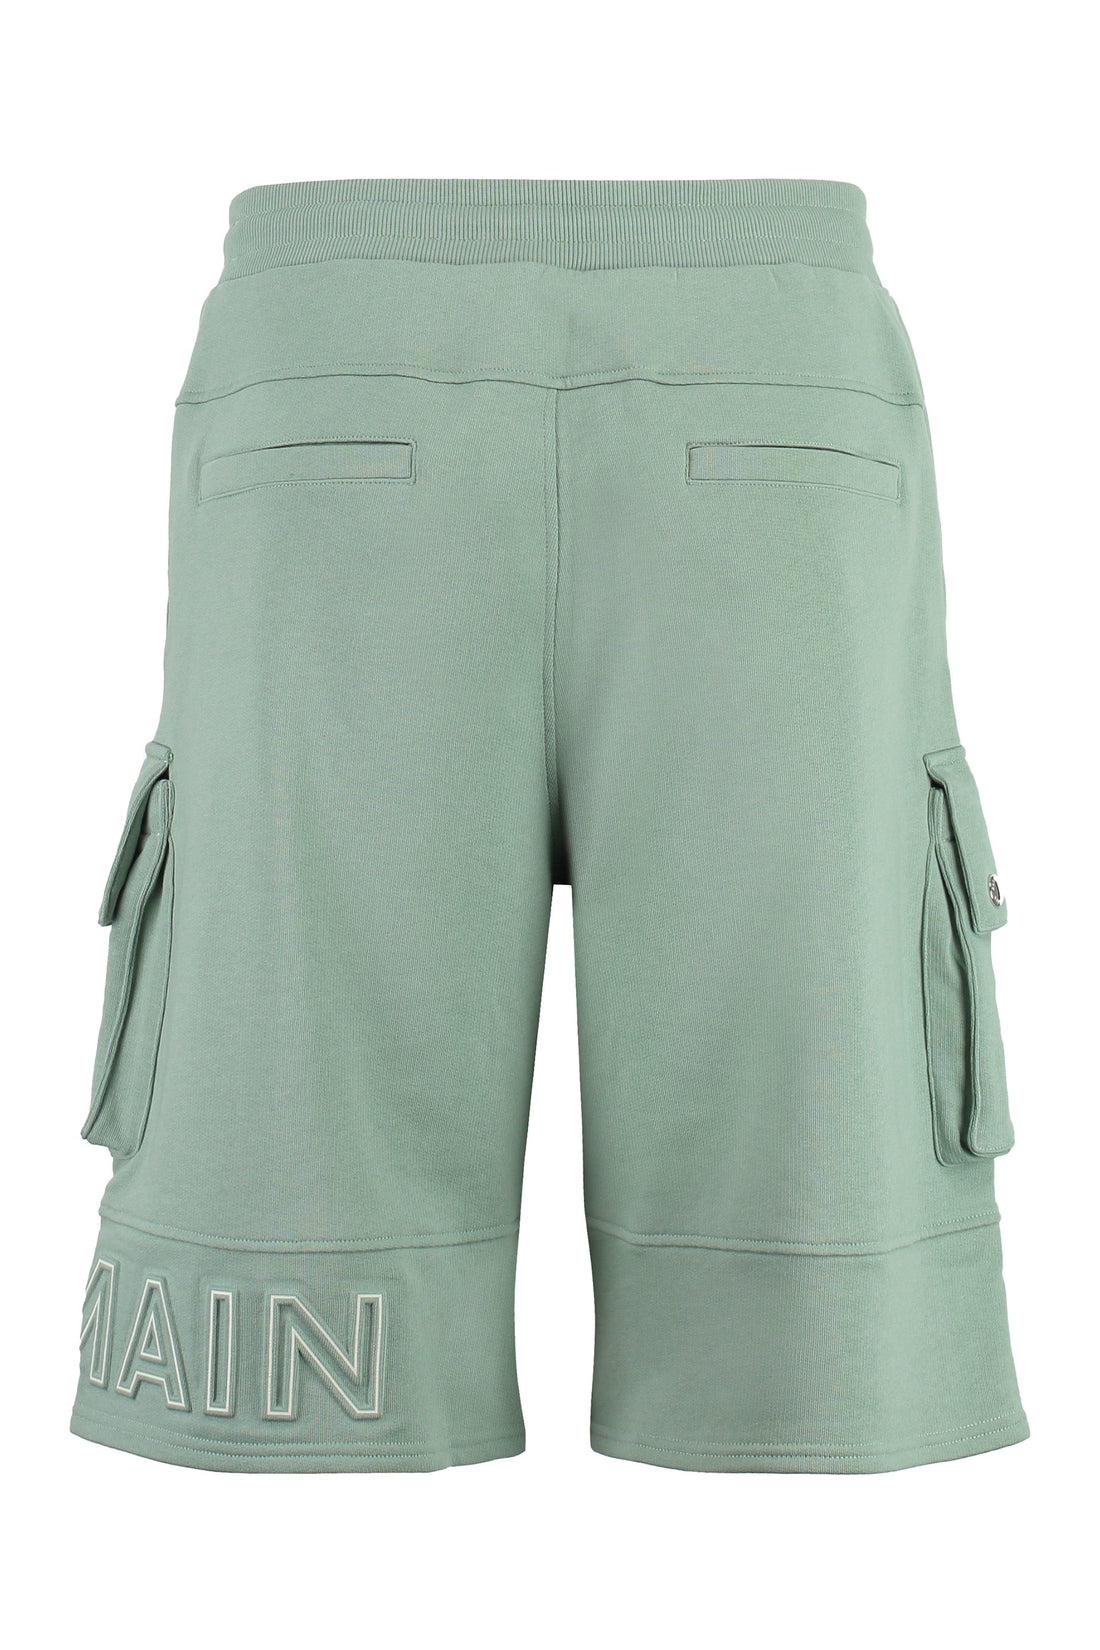 Balmain-OUTLET-SALE-Cotton bermuda shorts-ARCHIVIST